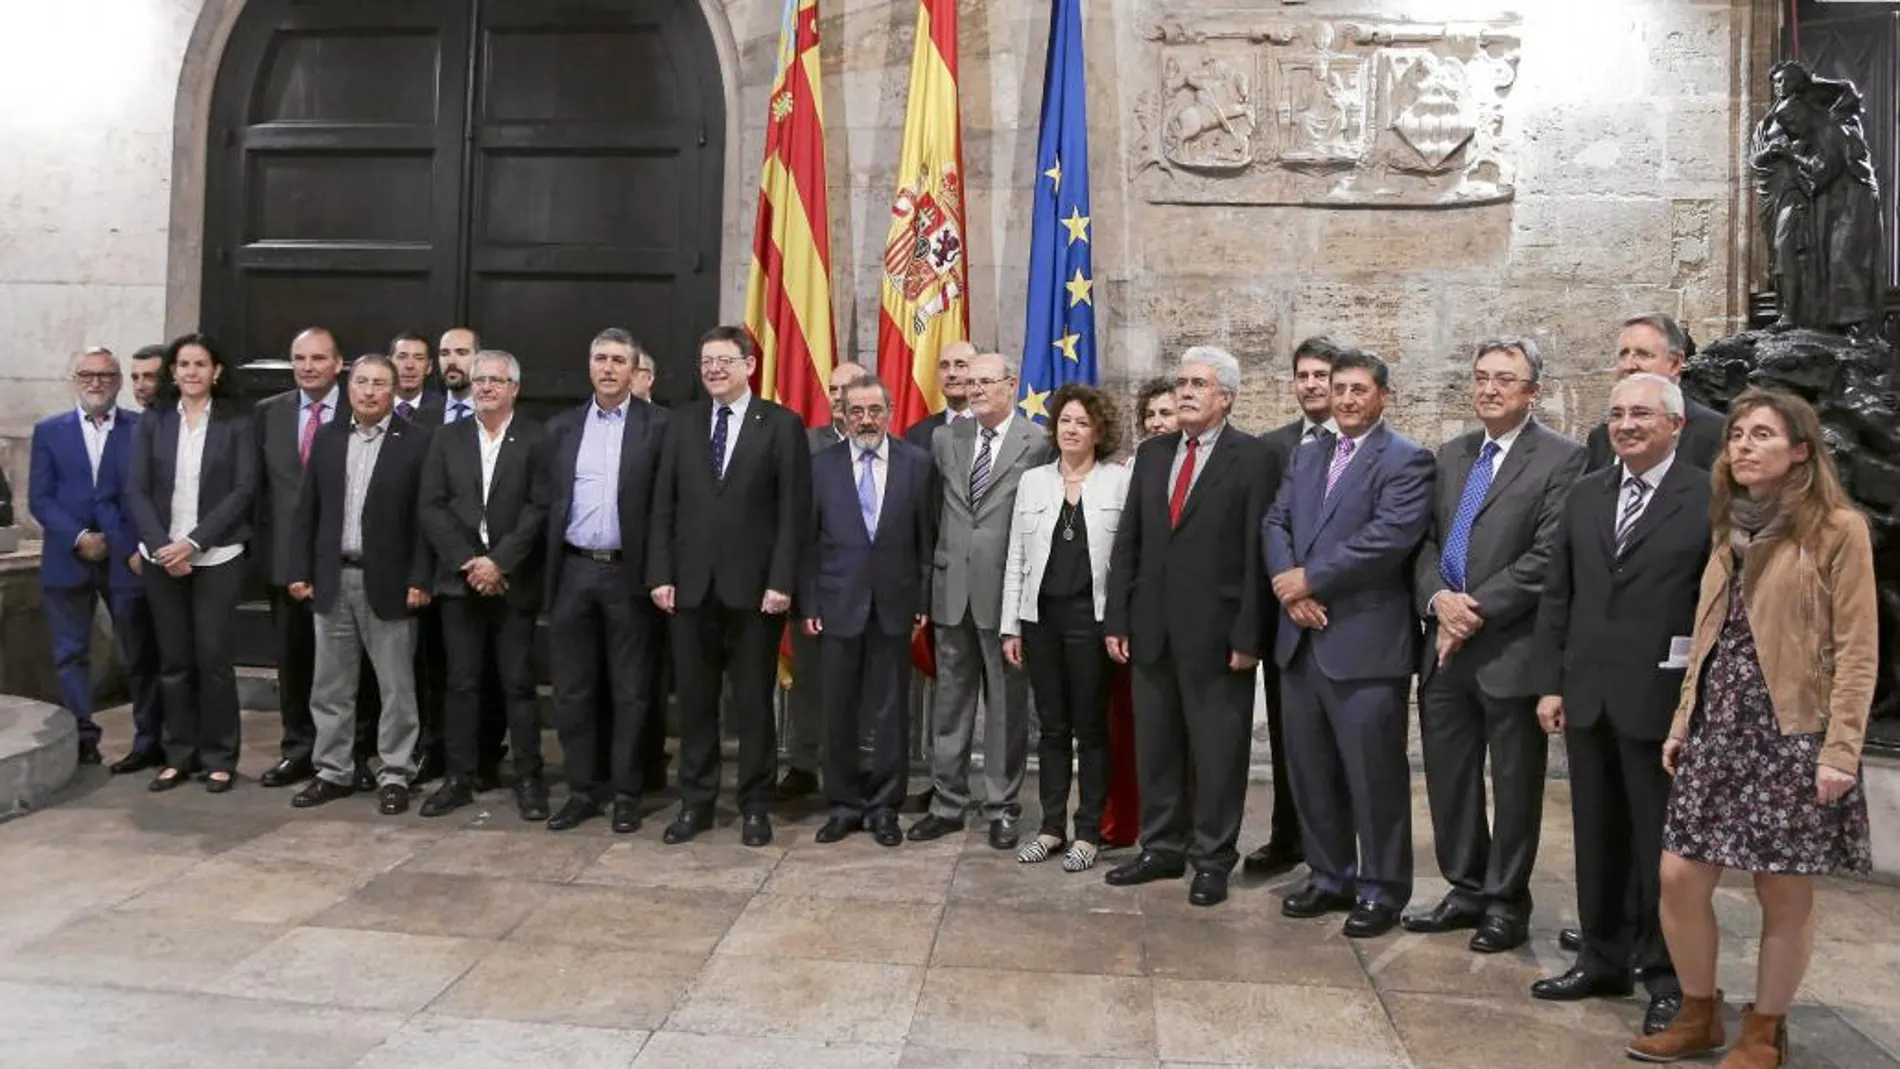 El Consell Valencià de la Innovació mantuvo ayer su primer encuentro para diseñar la futura Agencia